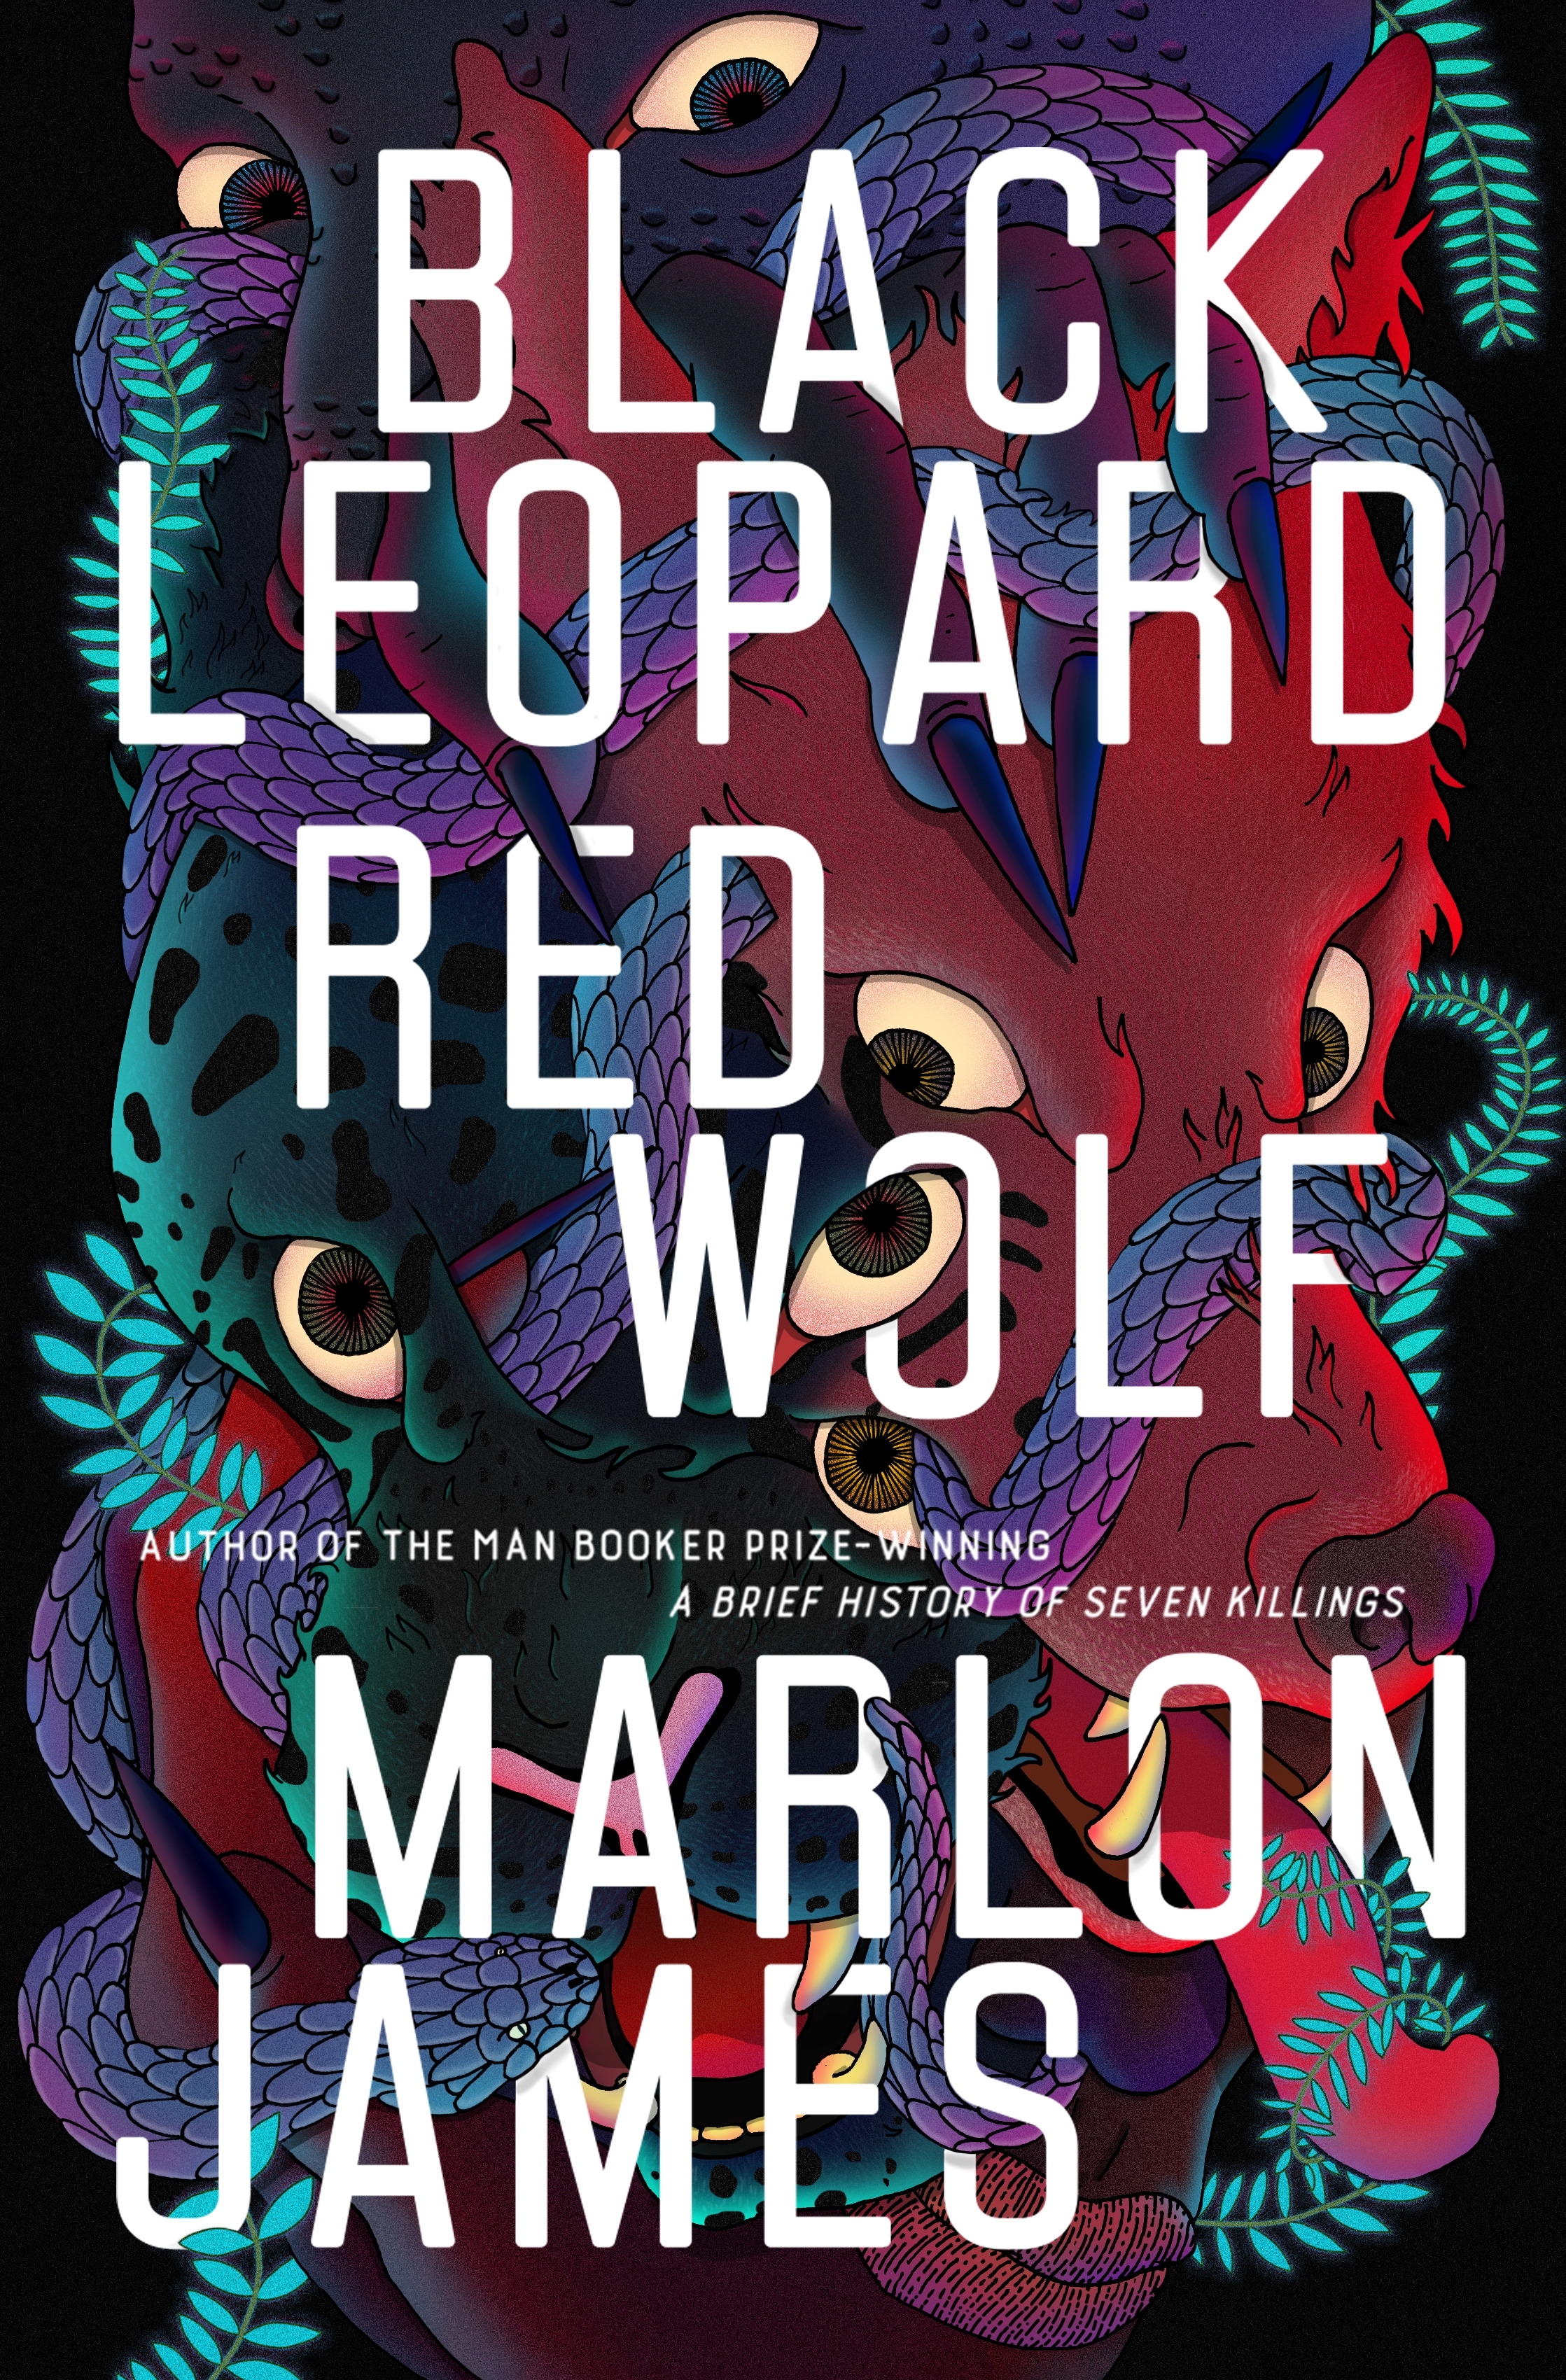 black leopard red wolf sequel